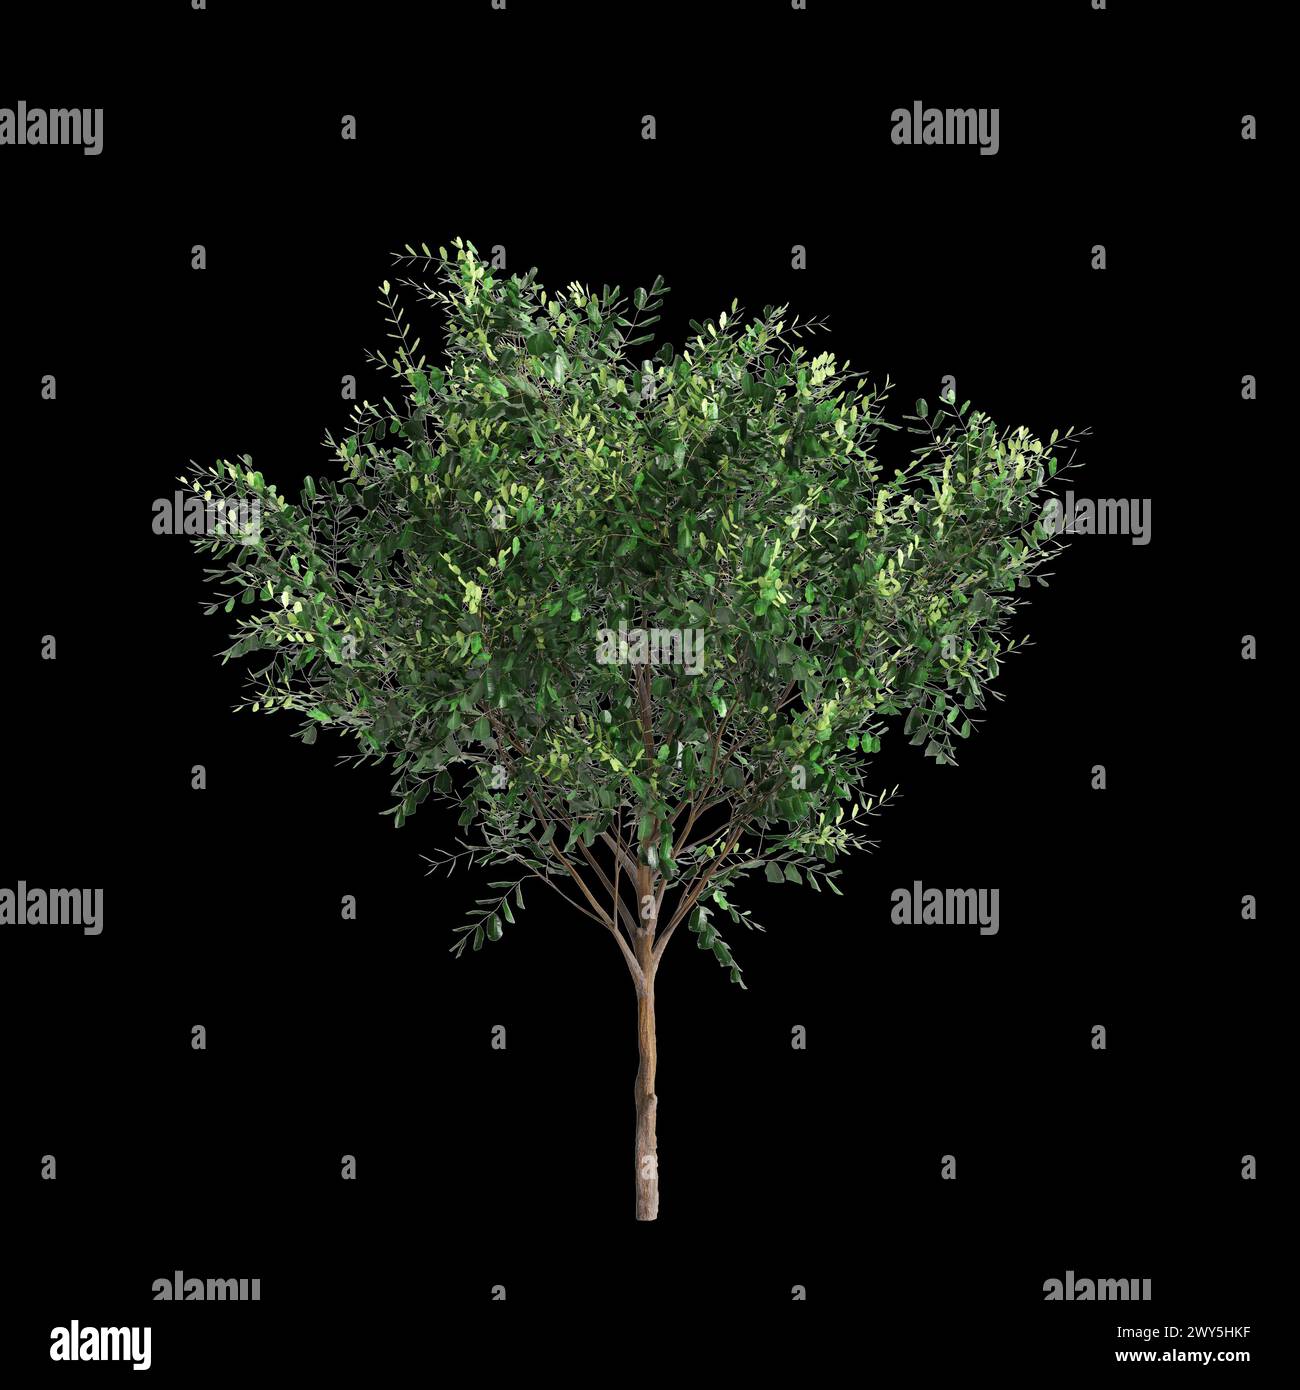 3d illustration of set Bergerocactus emoryi tree isolated on black background Stock Photo